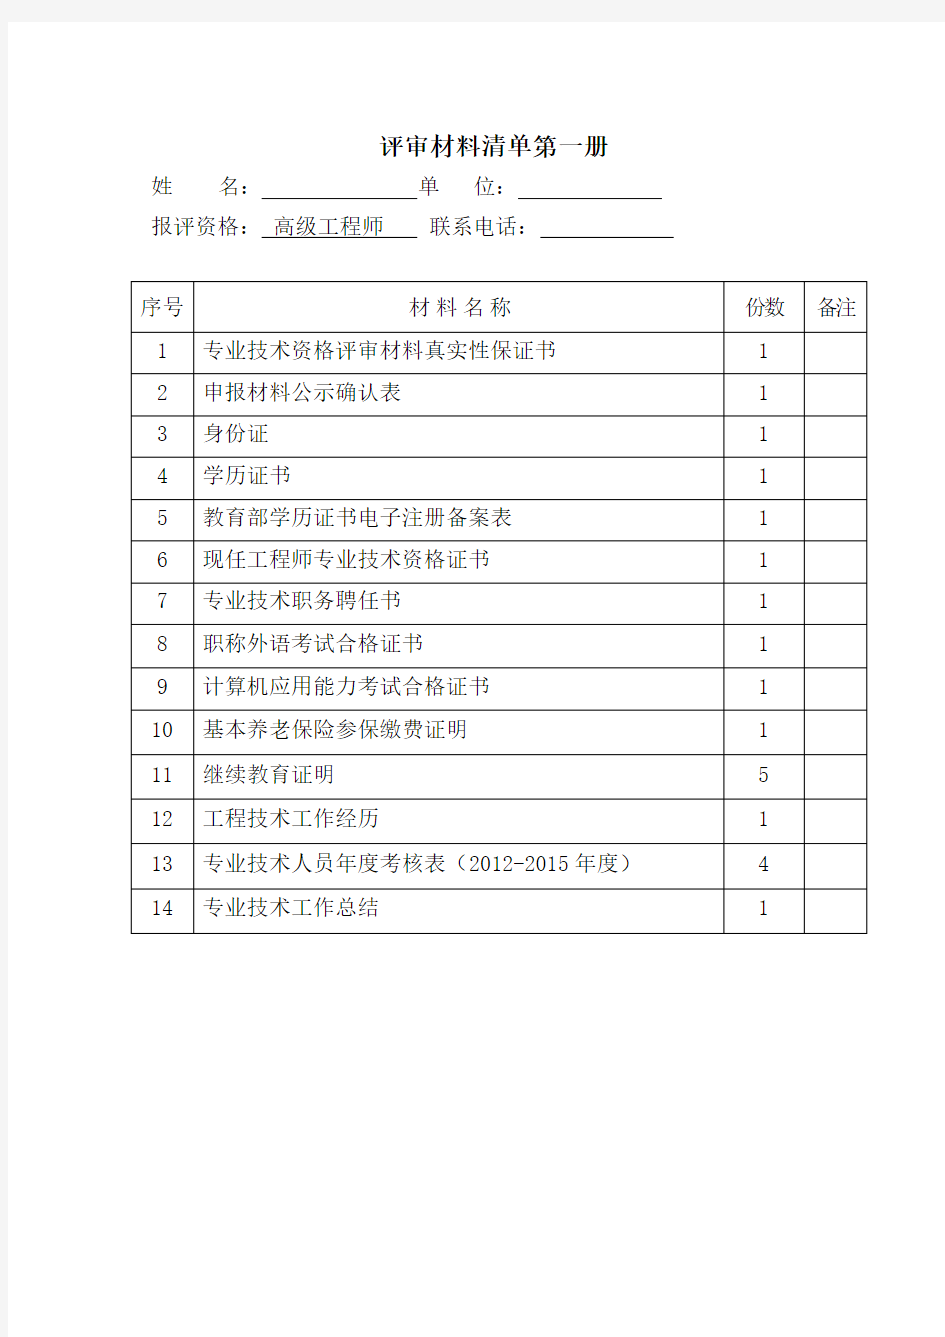 1浙江省高级工程师-职称评审材料清单